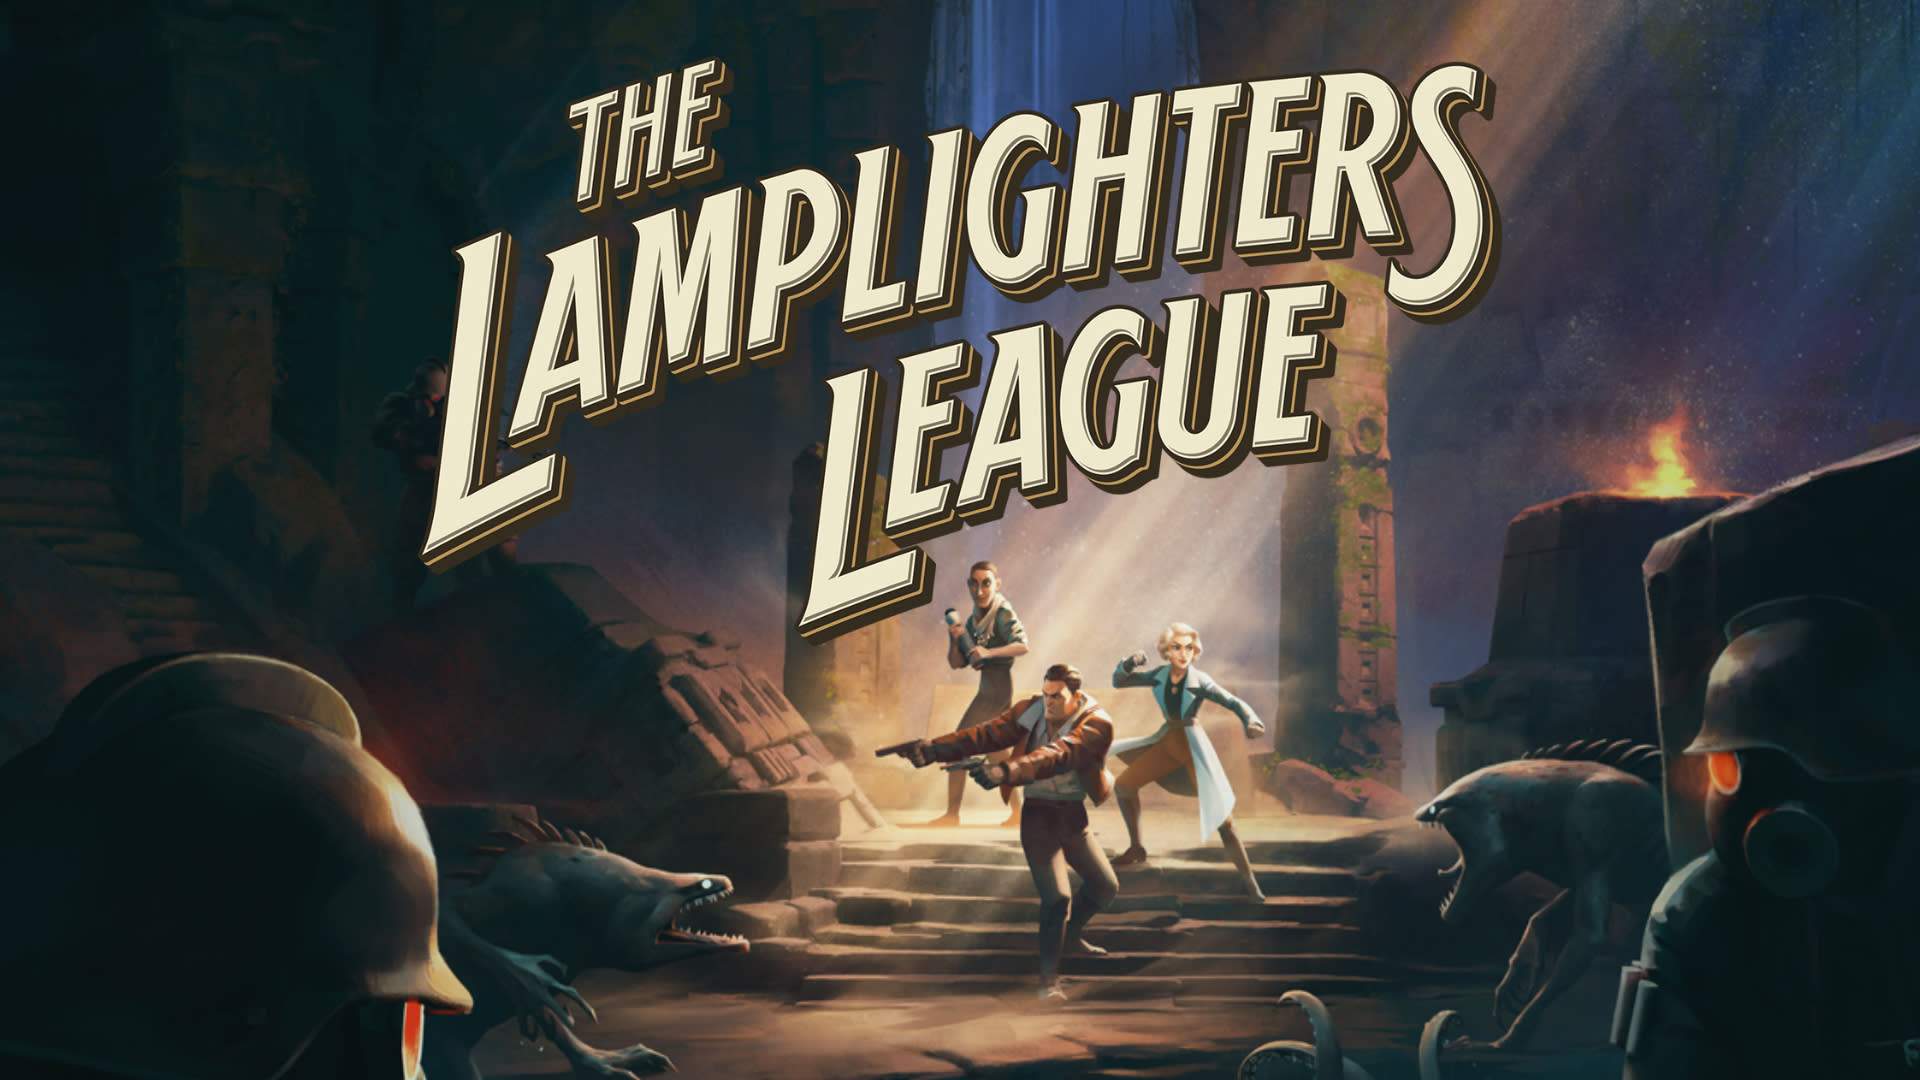 المفارقة تصف بيع The Lamplighters League بأنه “خيبة أمل كبيرة”